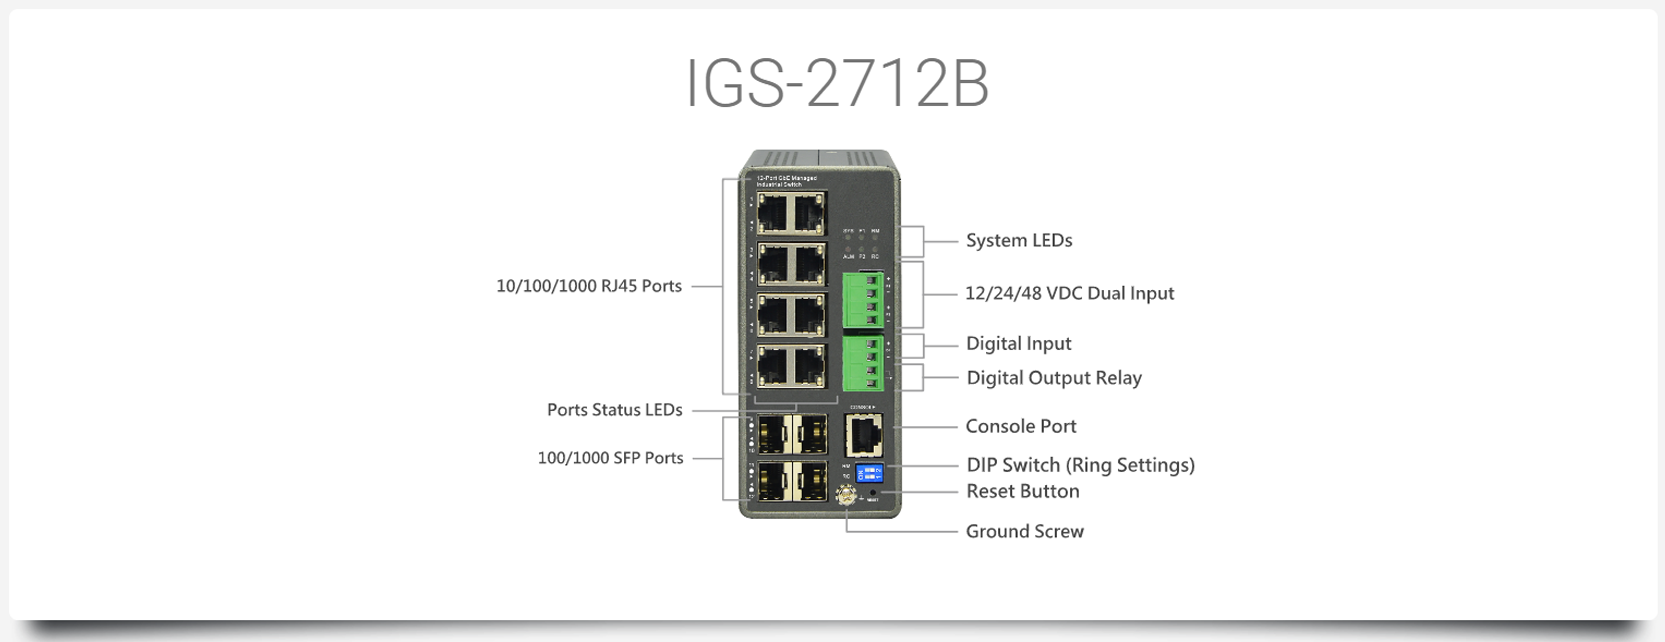 IGS-2712B